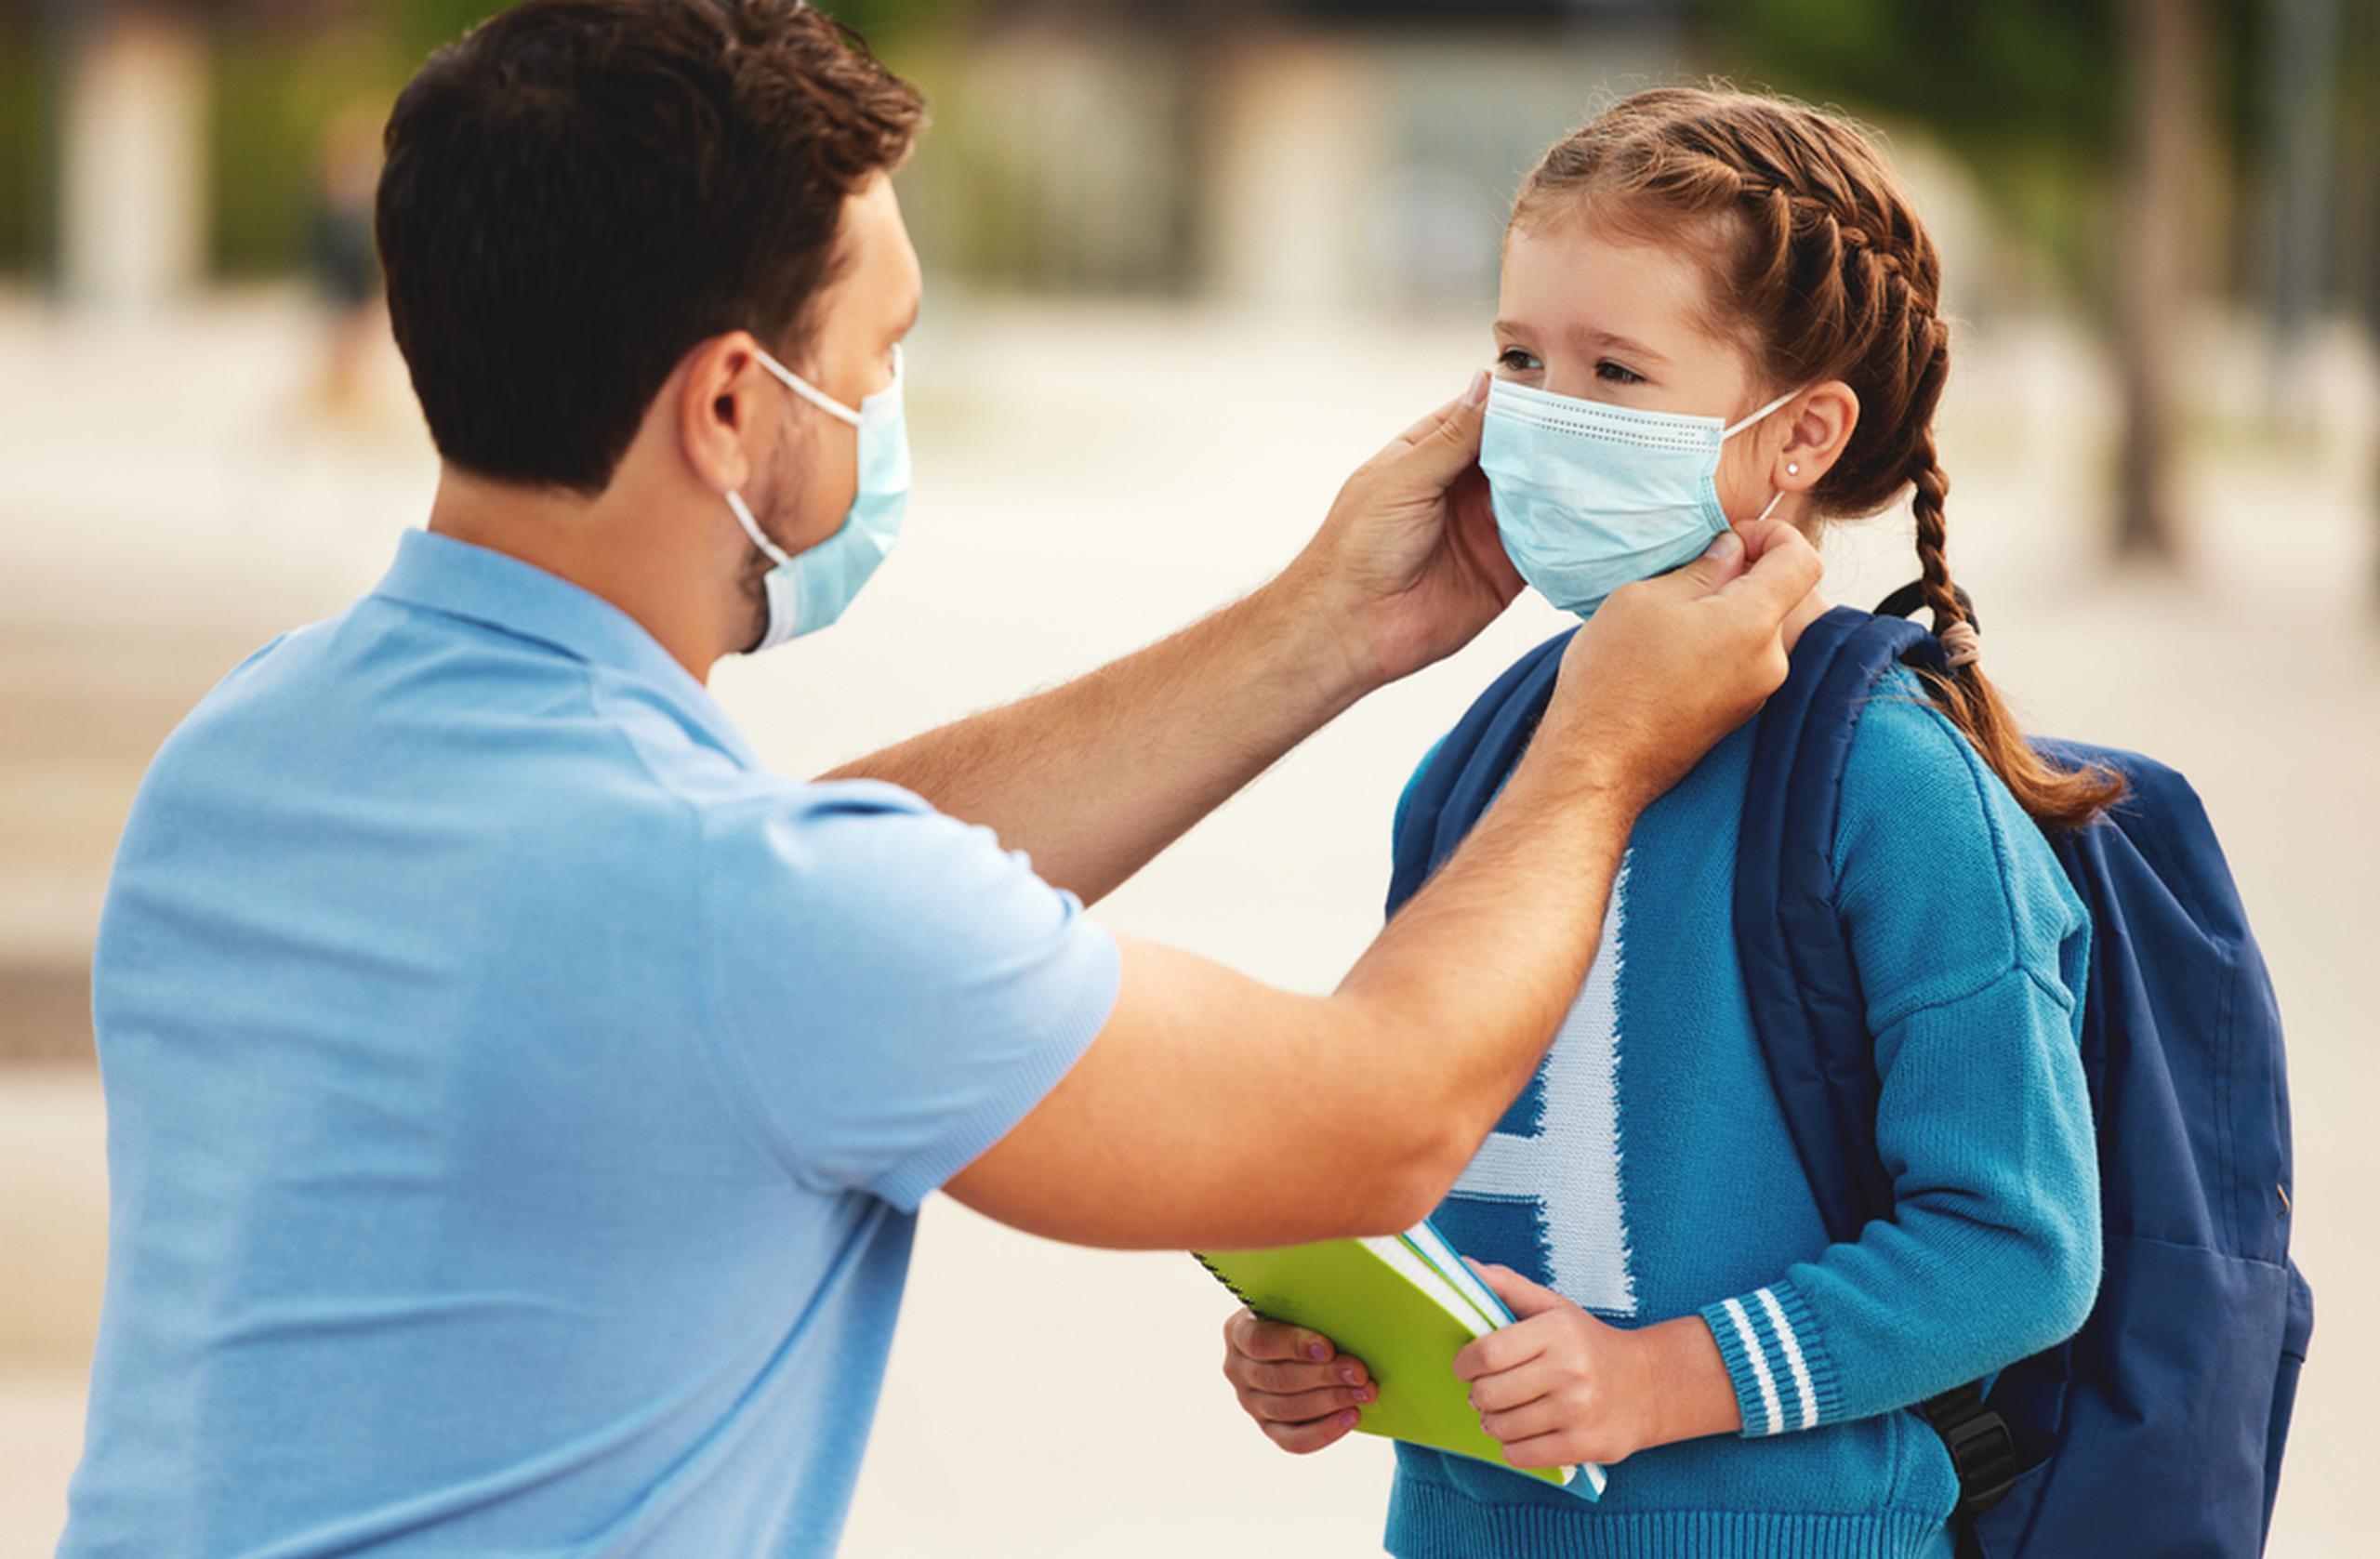 El uso mandatorio de mascarillas, la ventilación del área y el distanciamiento físico han probado ser eficaces para mitigar la transmisión del virus en las escuelas.